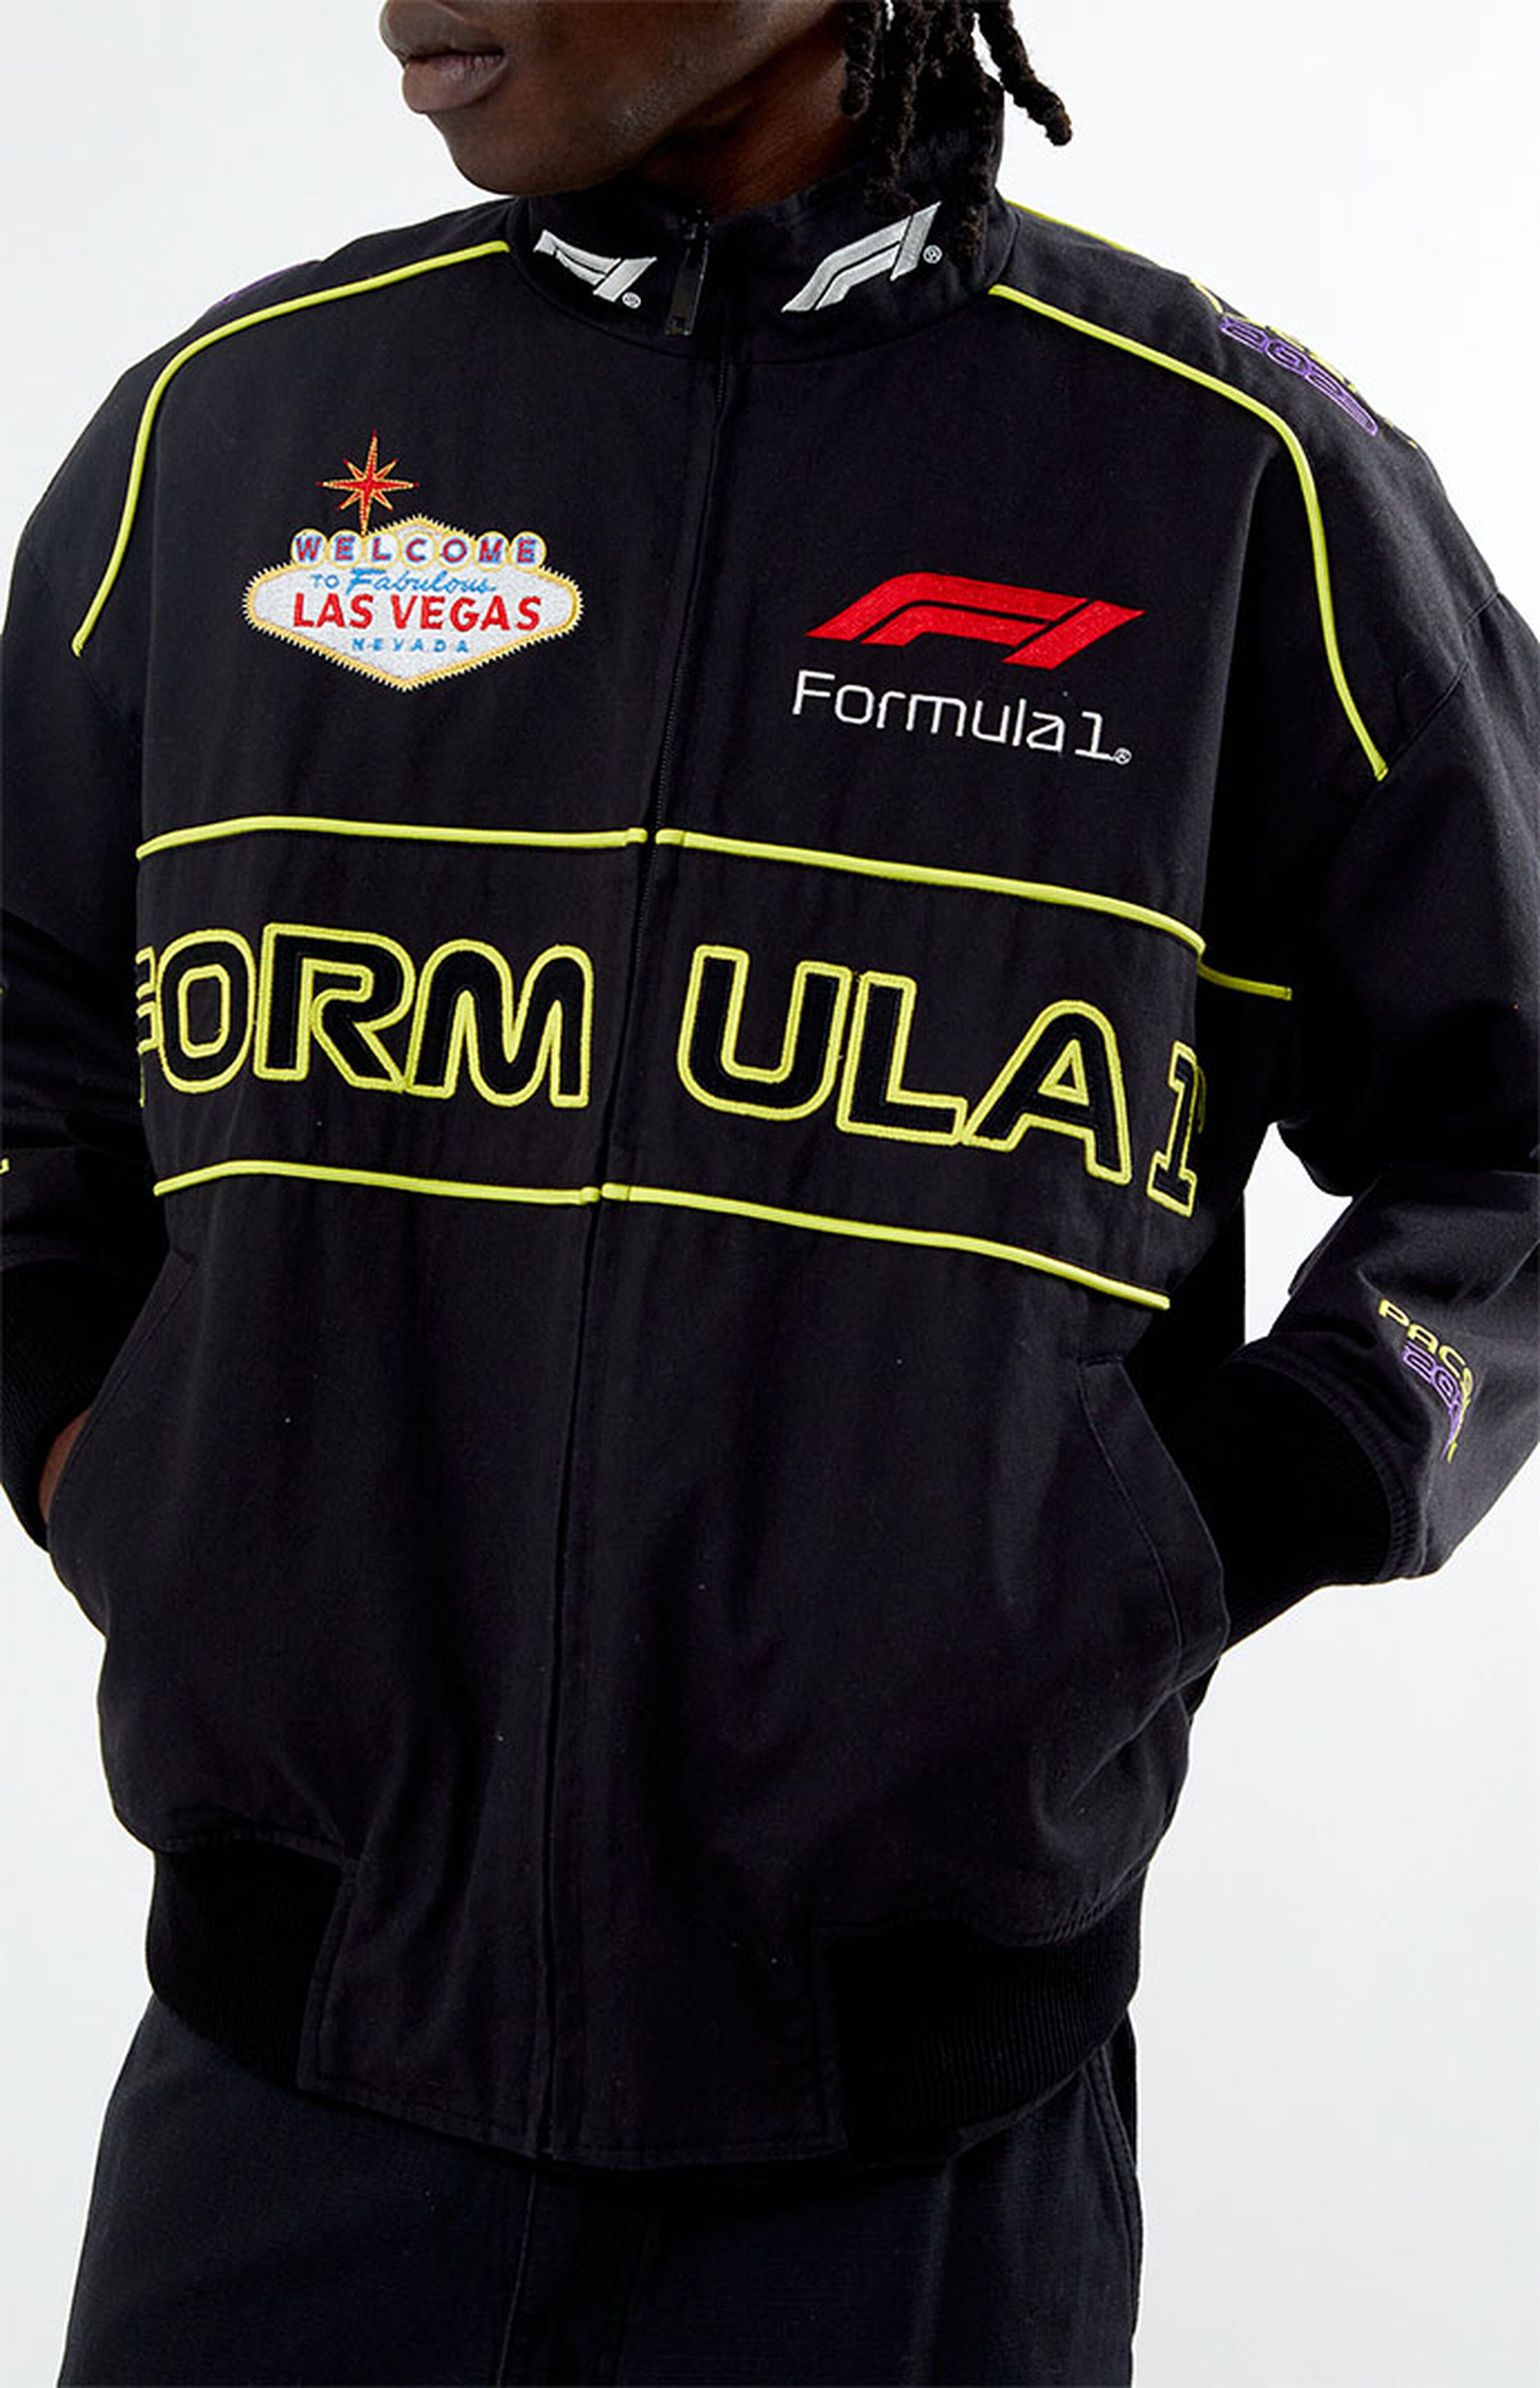 Formula 1 x PacSun Las Vegas Pole Position Jacket | PacSun